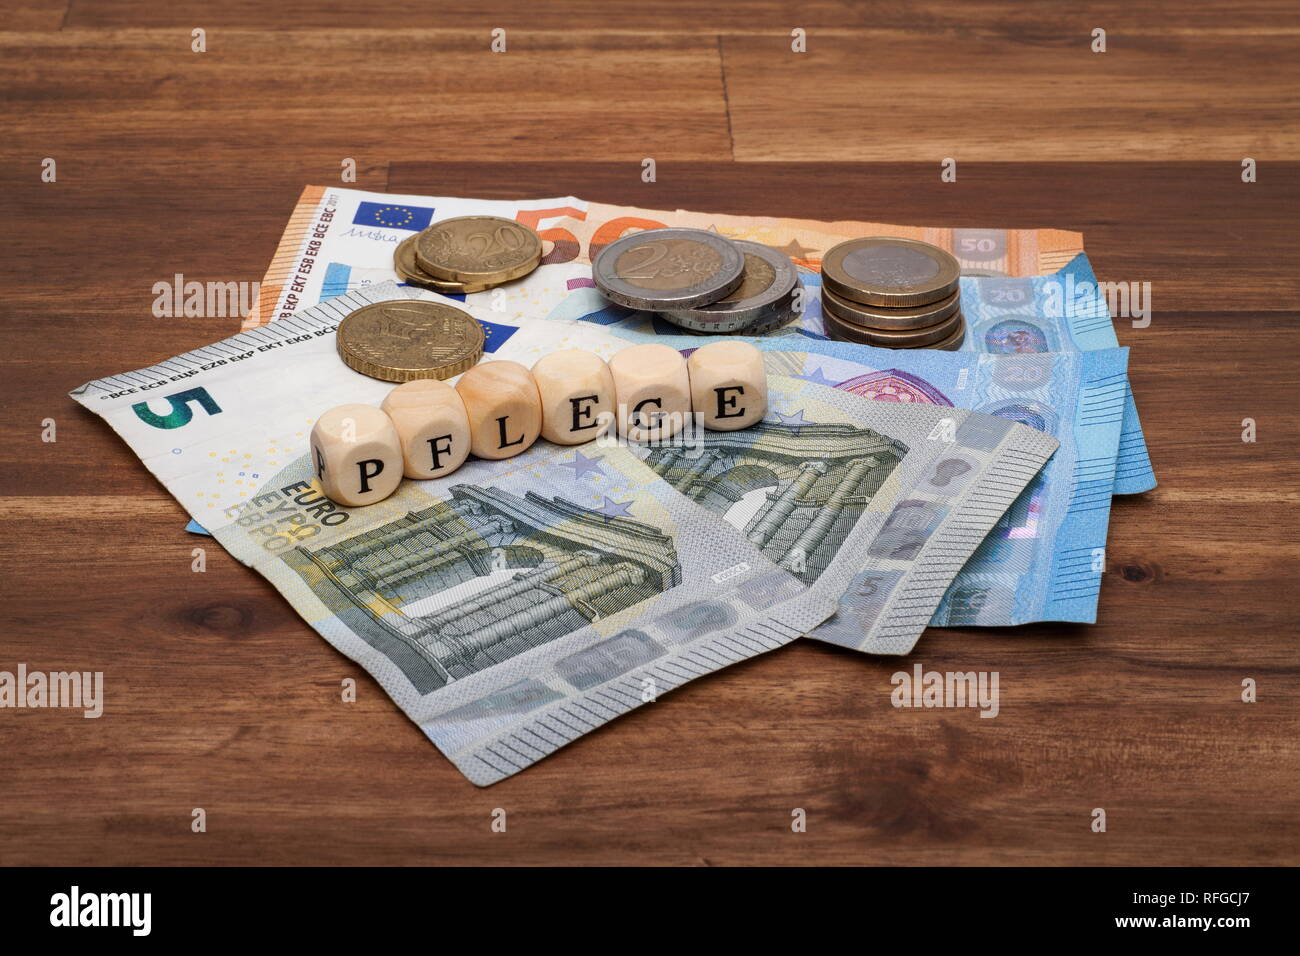 Die Euro Geldscheine und Münzen liegen auf dem Tisch mit dem Wort Pflege Stock Photo